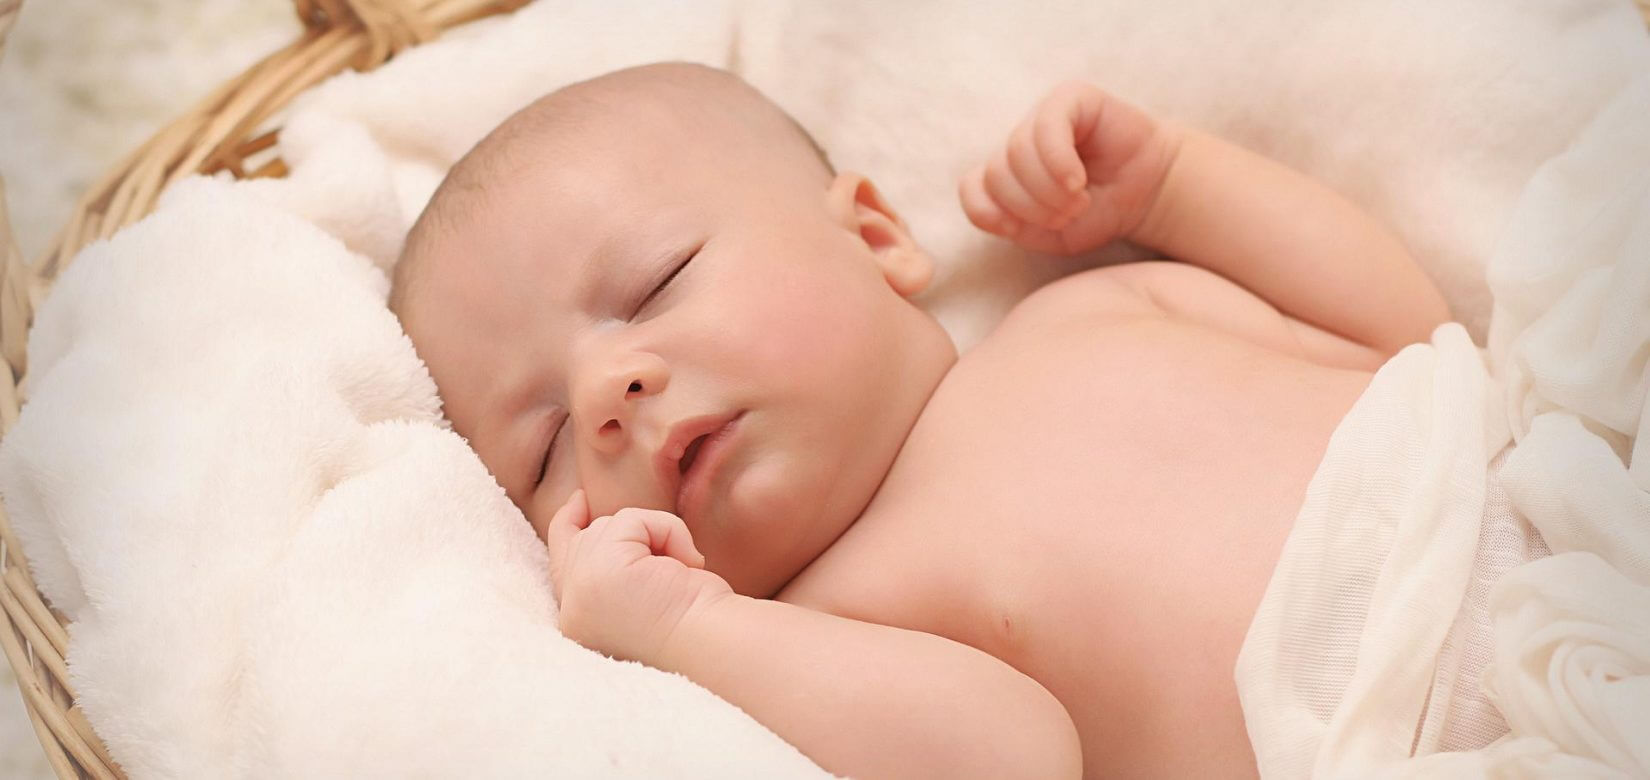 8 πράγματα που μπορεί να κάνει η μαμά όταν κοιμάται το μωρό